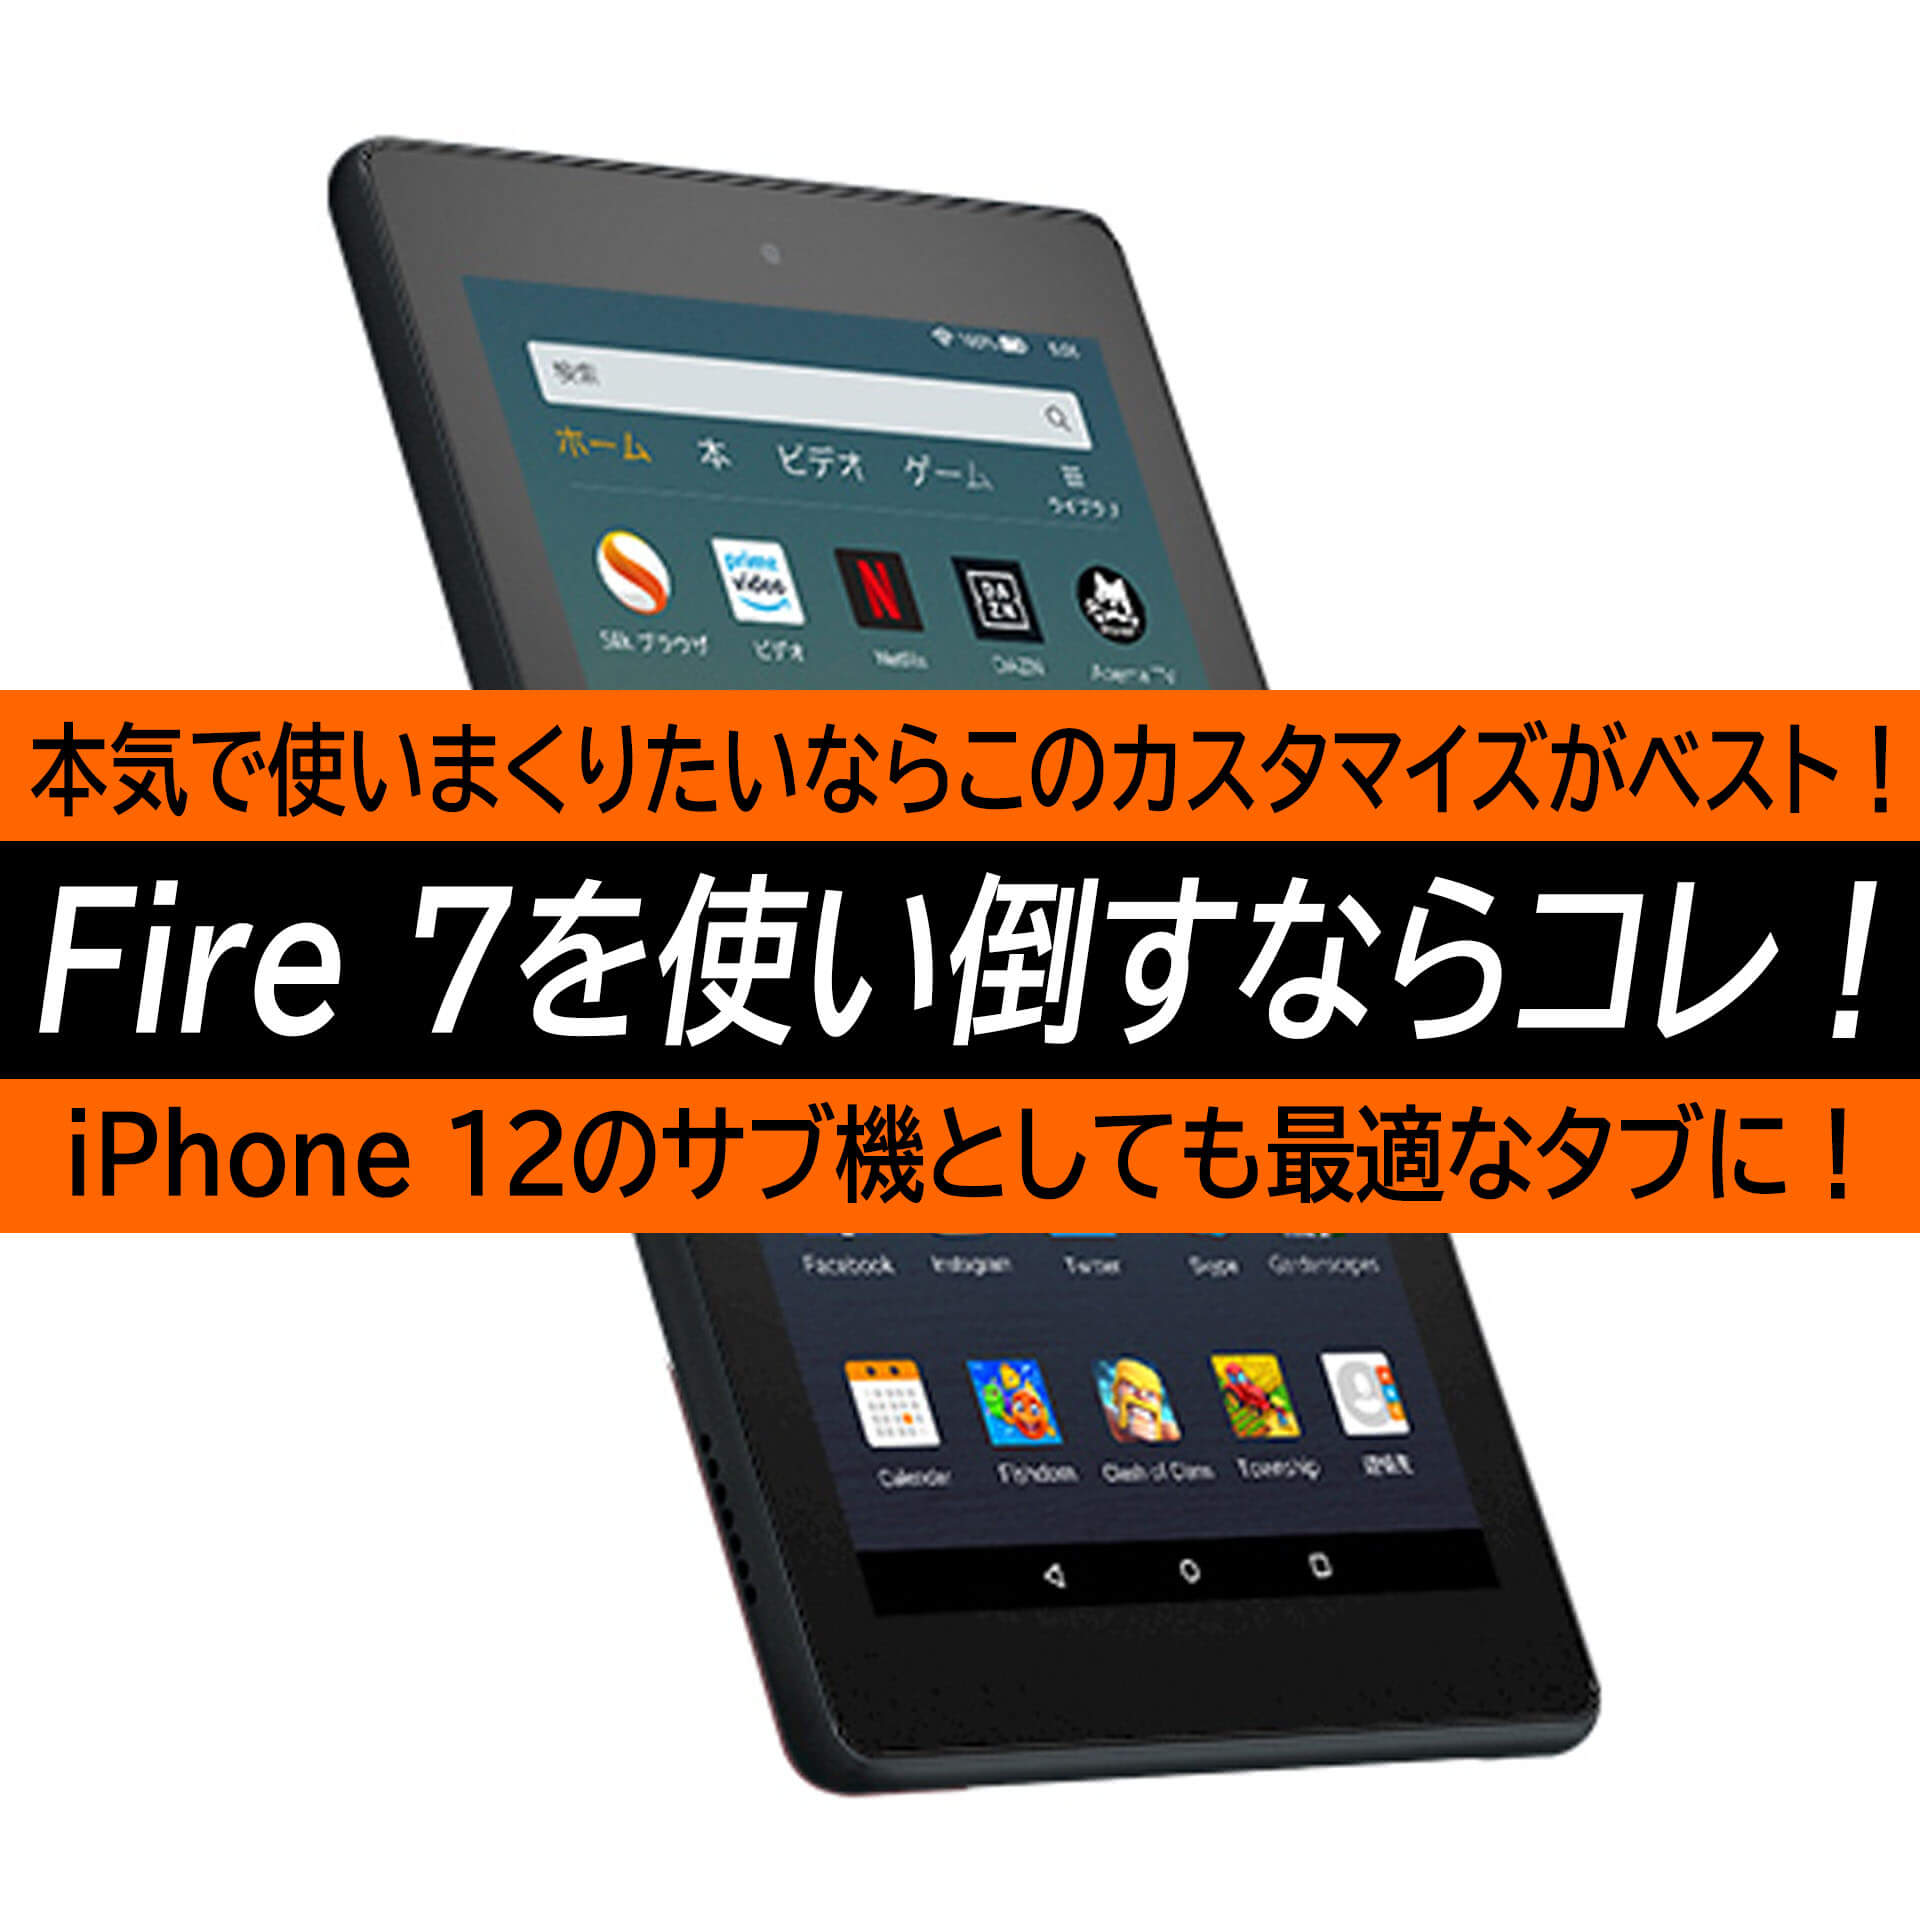 Iphone 12との2台持ちにも最適なタブレットamazon Fire 7 使い倒すならこの最強カスタマイズがお勧め ハイパーガジェット通信